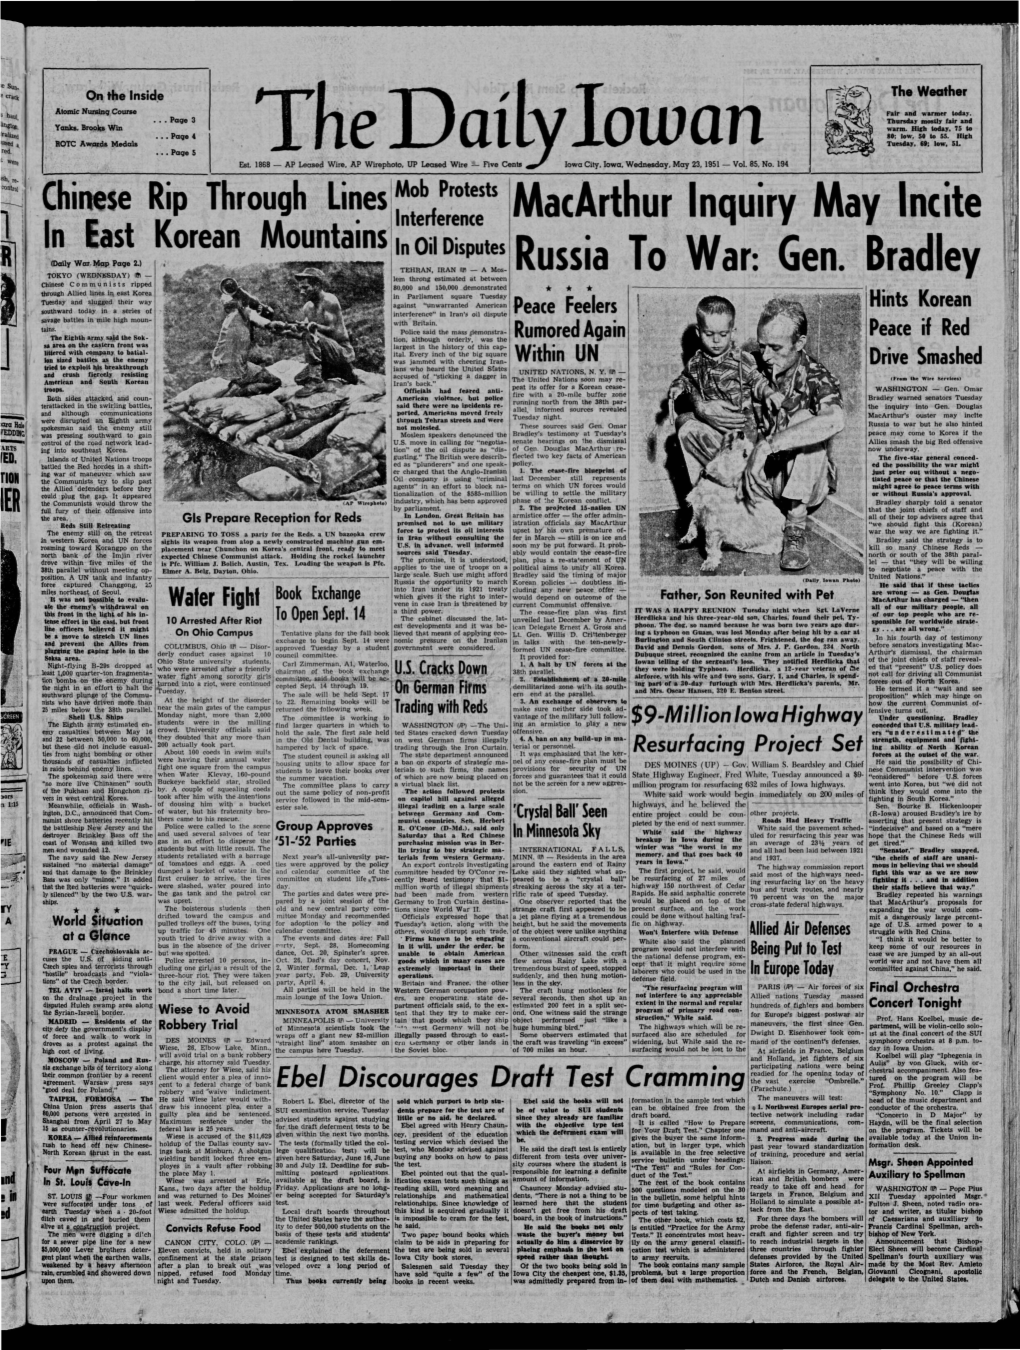 Daily Iowan (Iowa City, Iowa), 1951-05-23